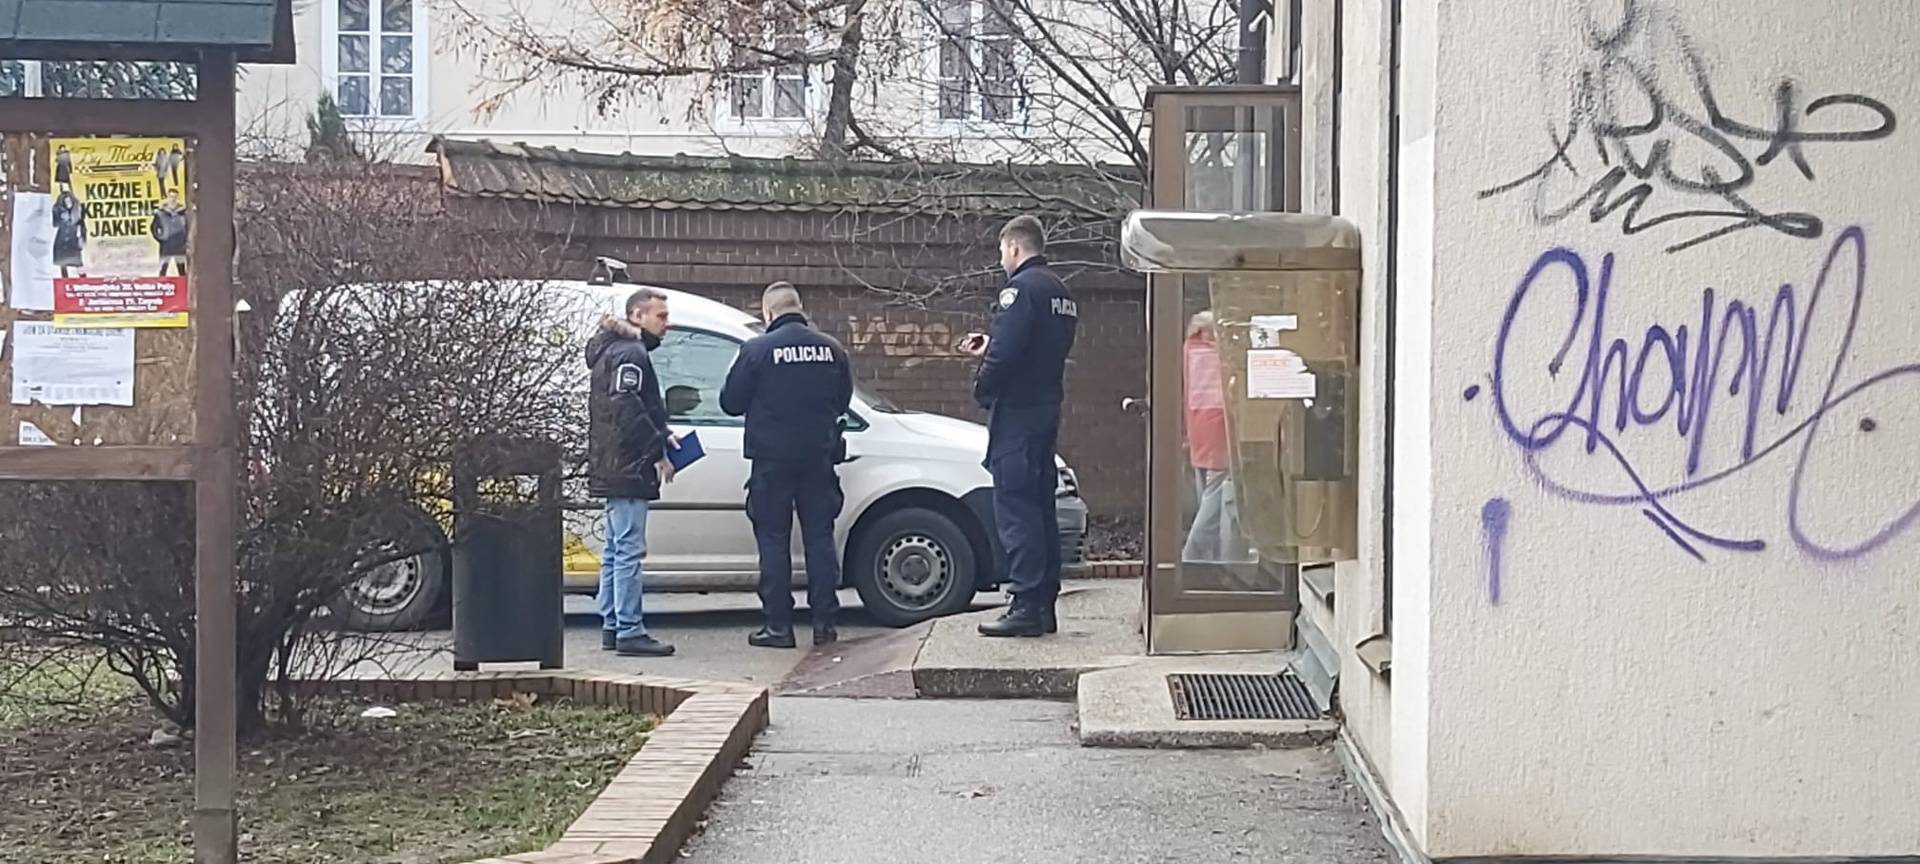 U Zagrebu opljačkali poštu, lopov u bijegu. Očevid u tijeku